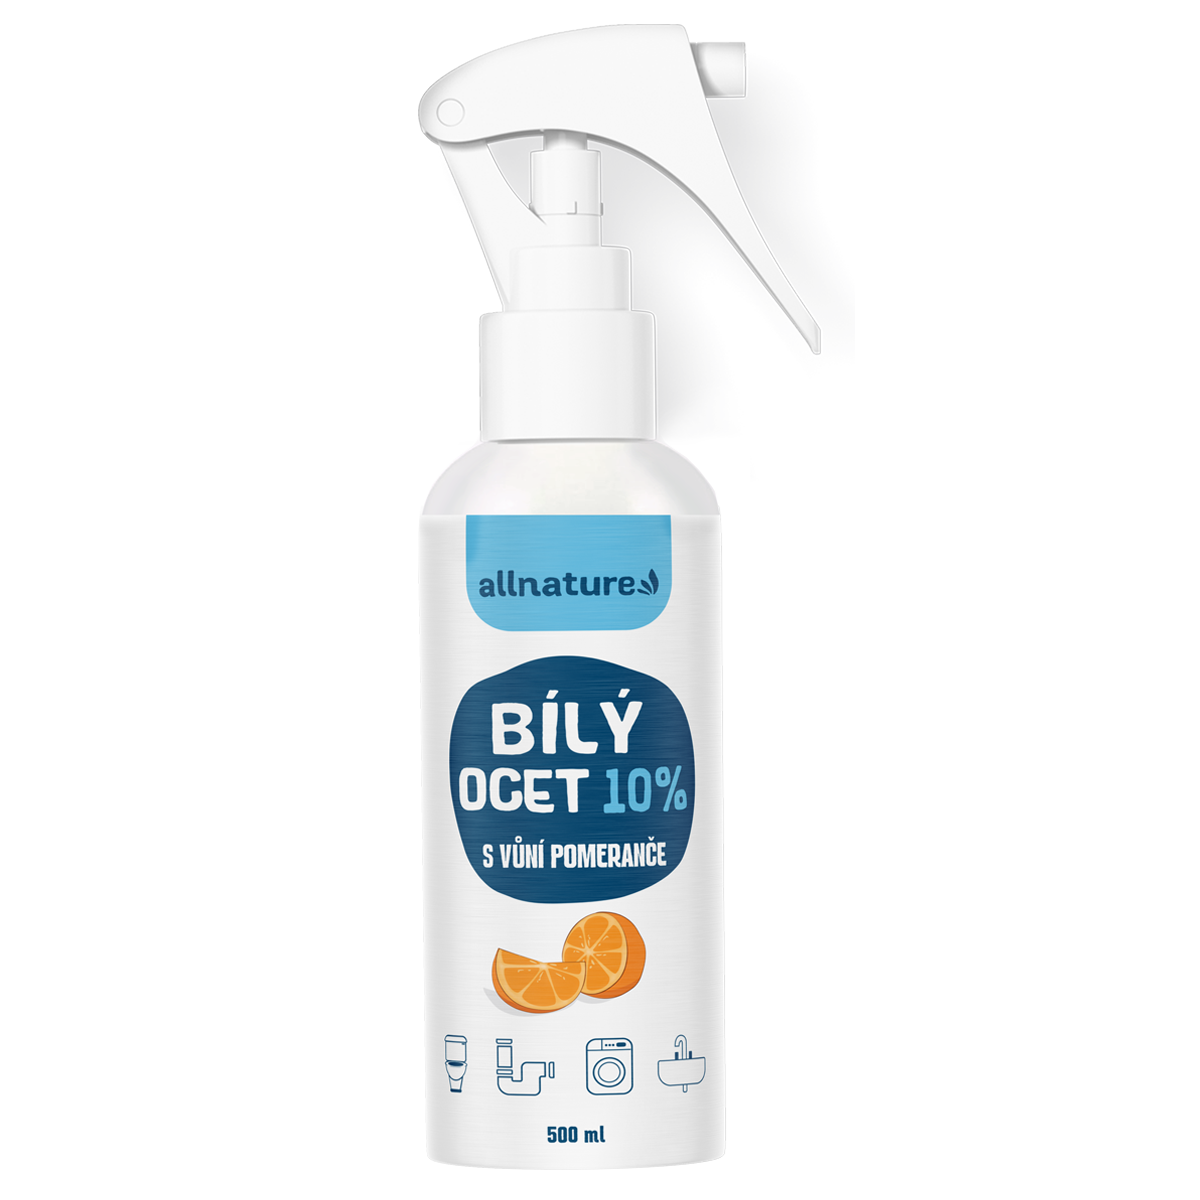 Allnature Bílý ocet sprej 10% s vůní pomeranče (500 ml) - univerzální přírodní čistič